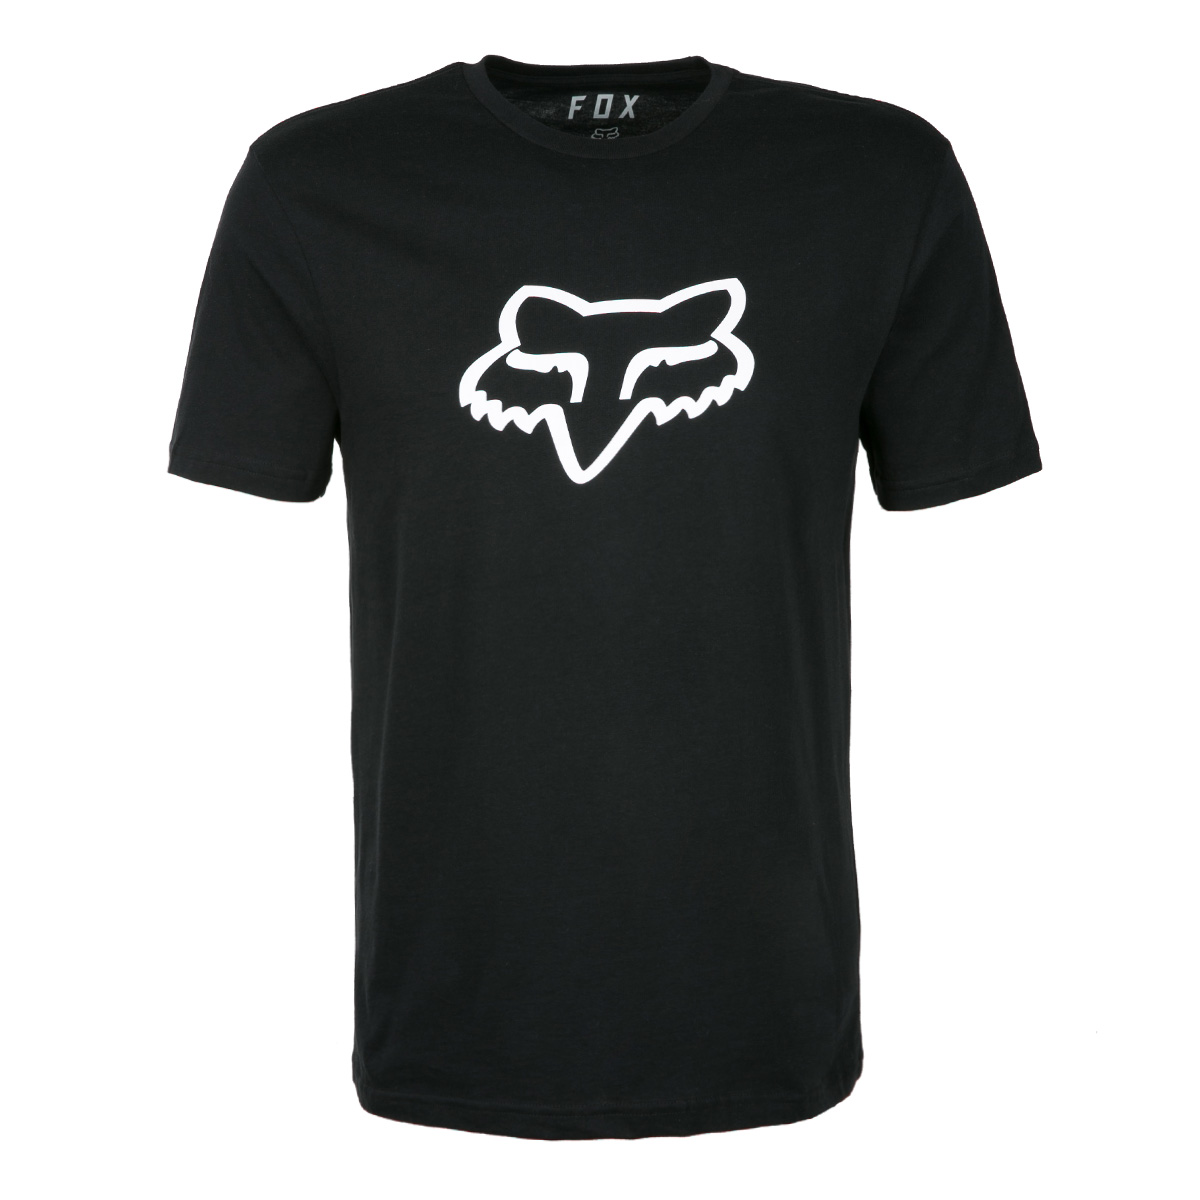 Fox T-Shirt Legacy Foxhead Premium Black